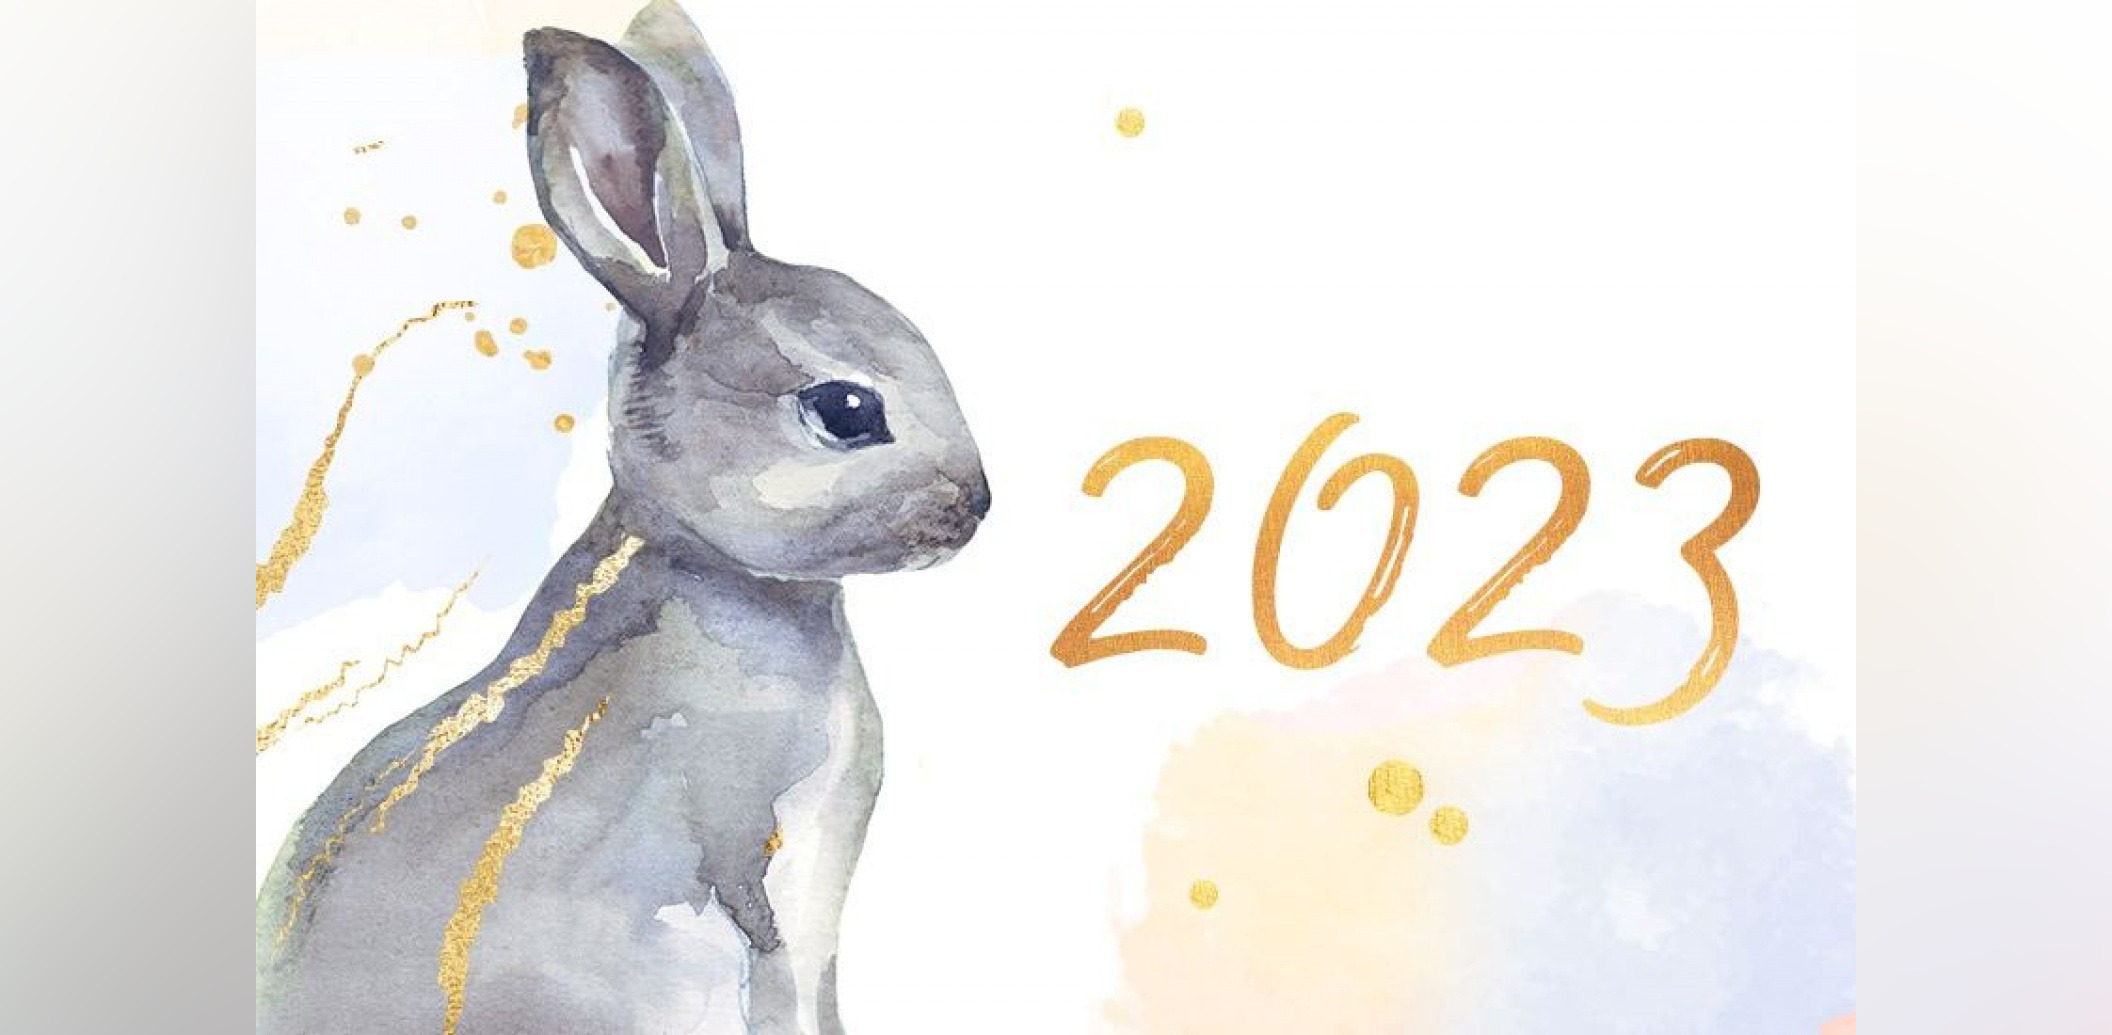 Зверь 2023 года. 2023 Год год кролика. Год кролика 2023 для кролика. Символ года 2023. Символ года 2023 картинки.